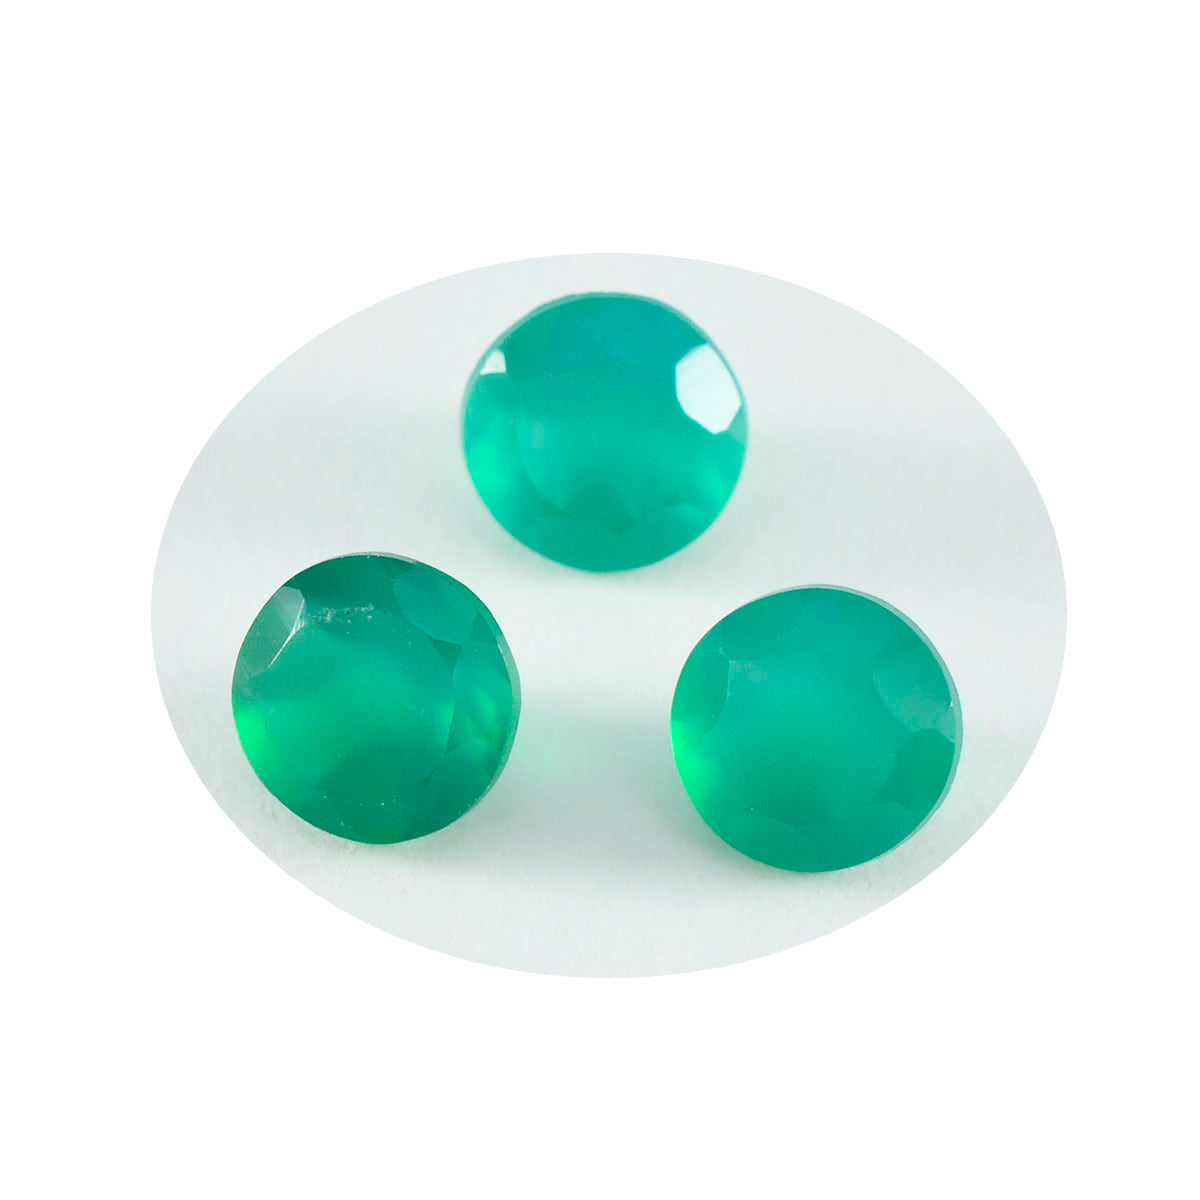 riyogems 1 шт., натуральный зеленый оникс, граненые 6x6 мм, круглые камни хорошего качества